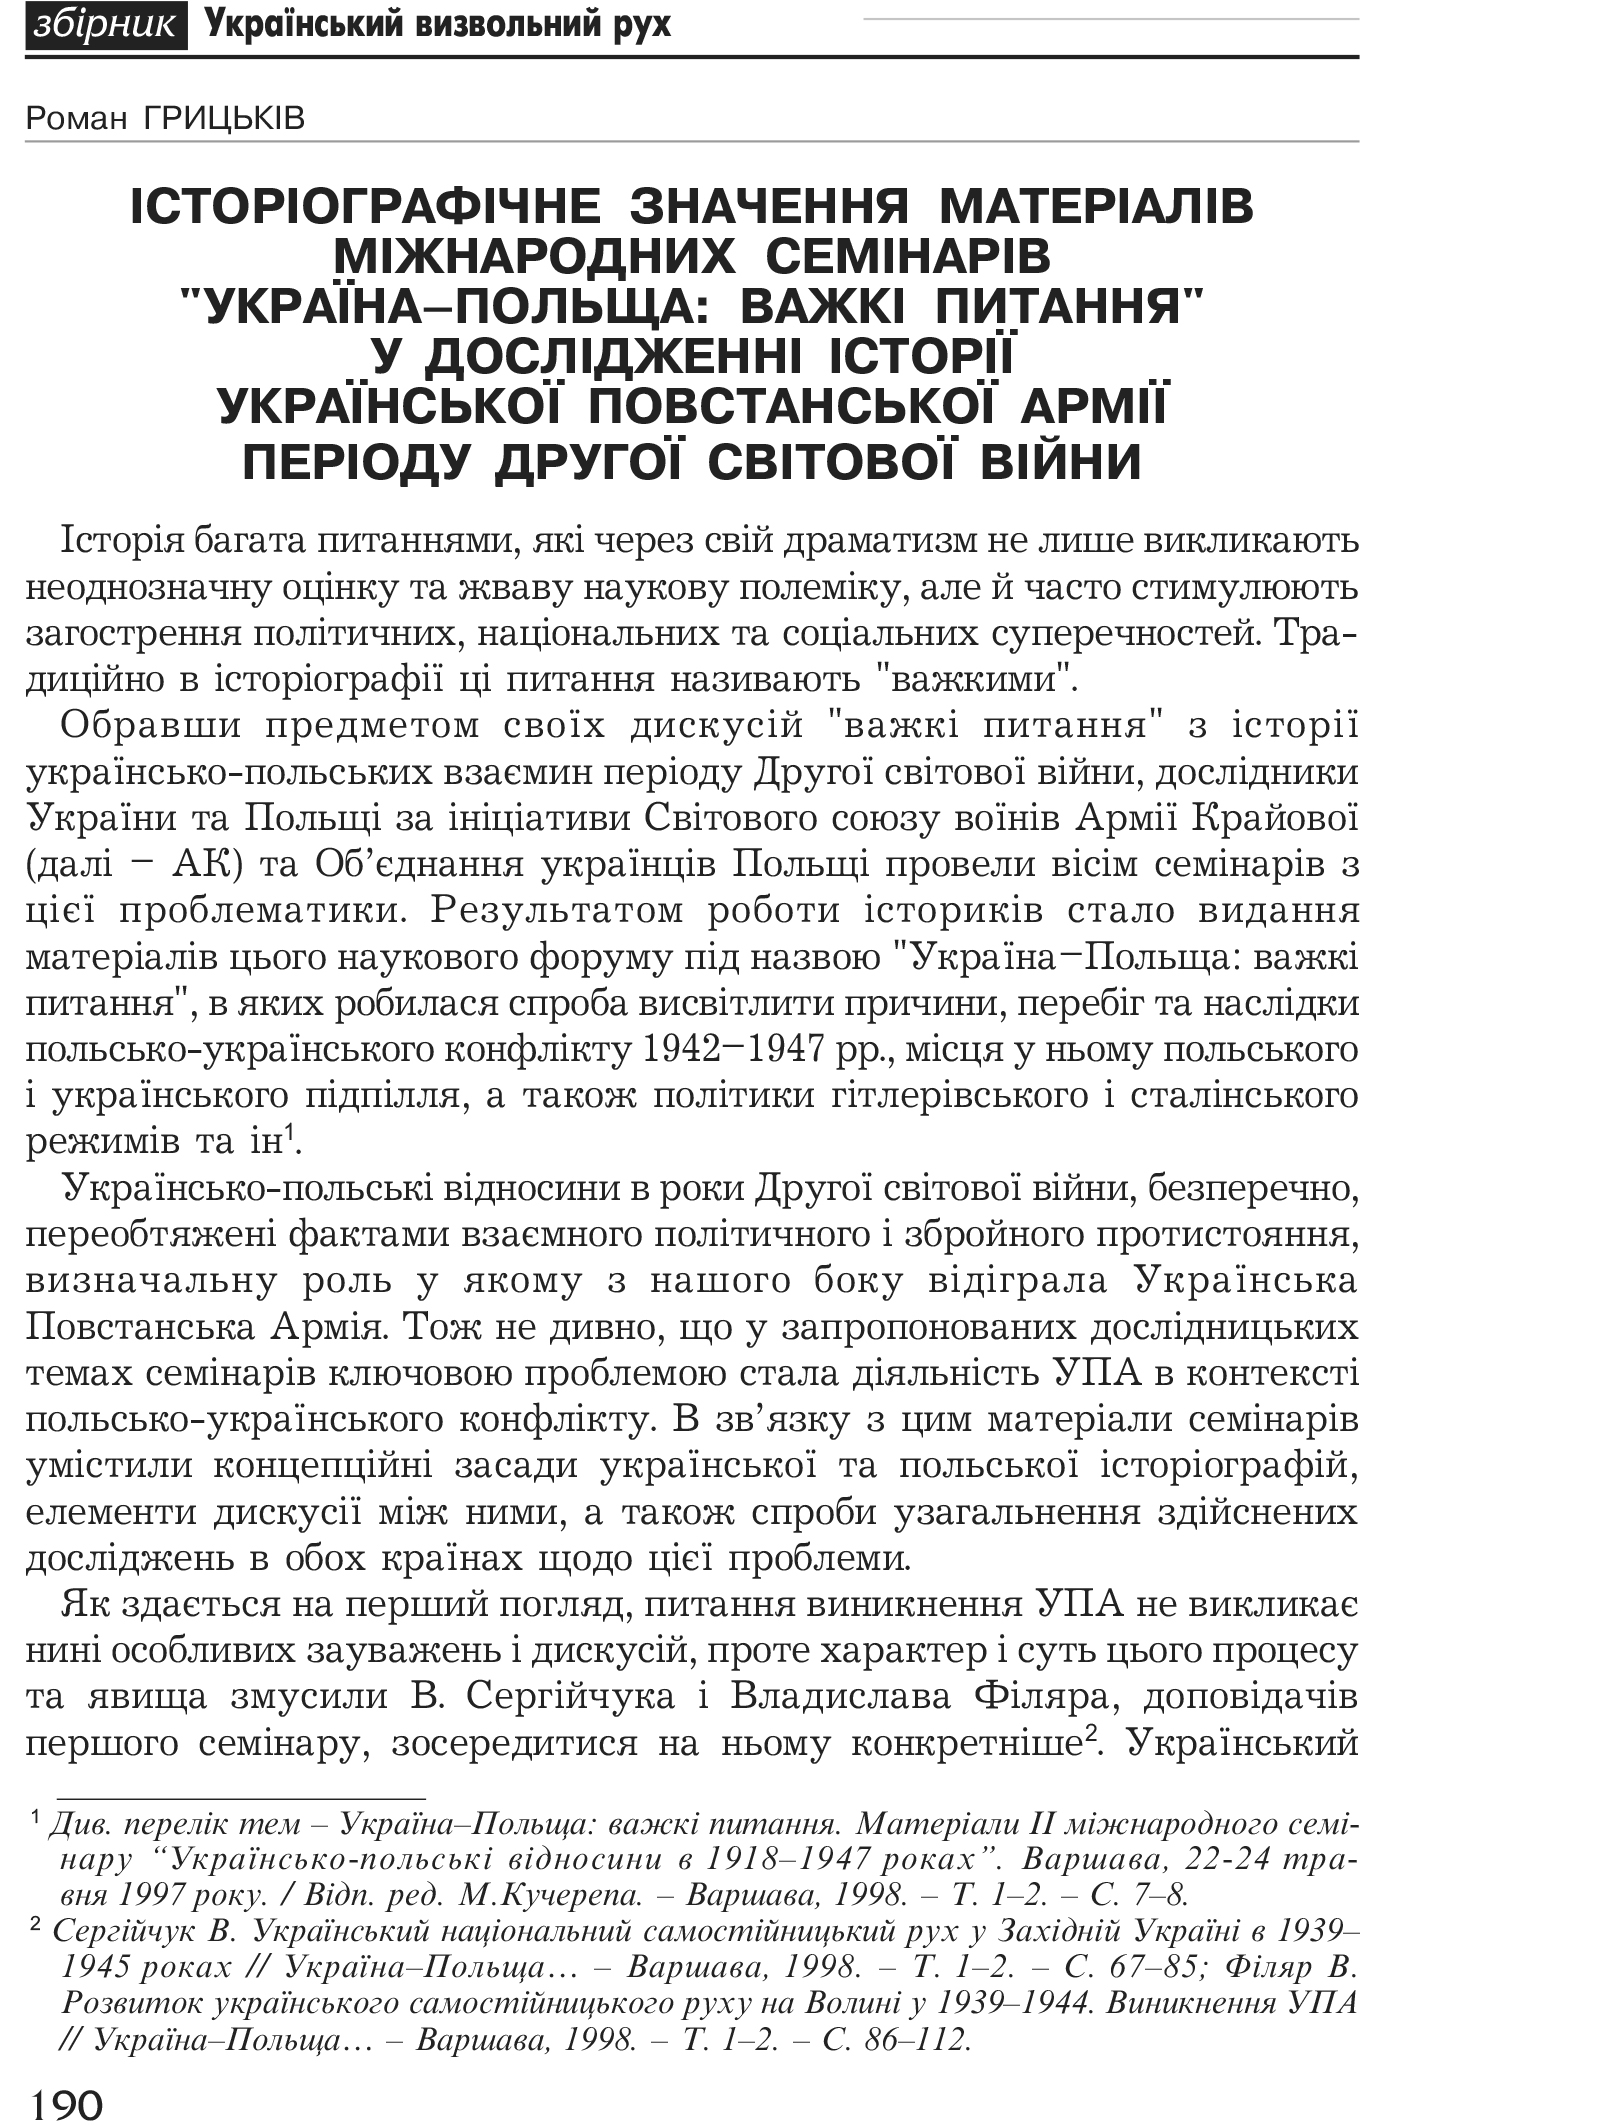 Український визвольний рух №1, ст. 190 - 203